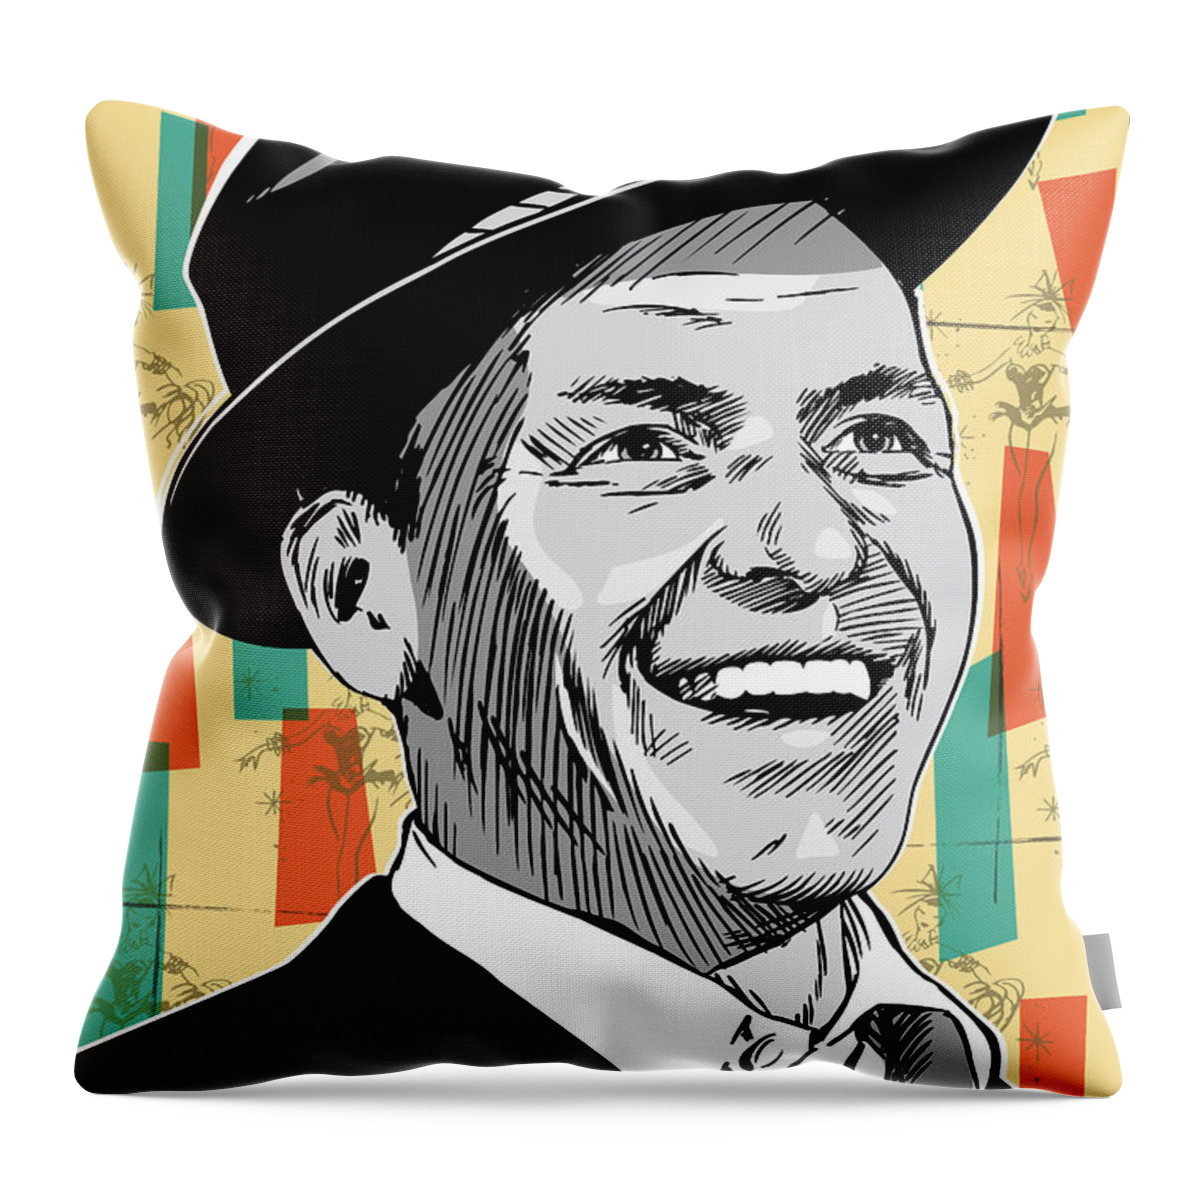 Music Throw Pillow featuring the digital art Frank Sinatra Pop Art by Jim Zahniser